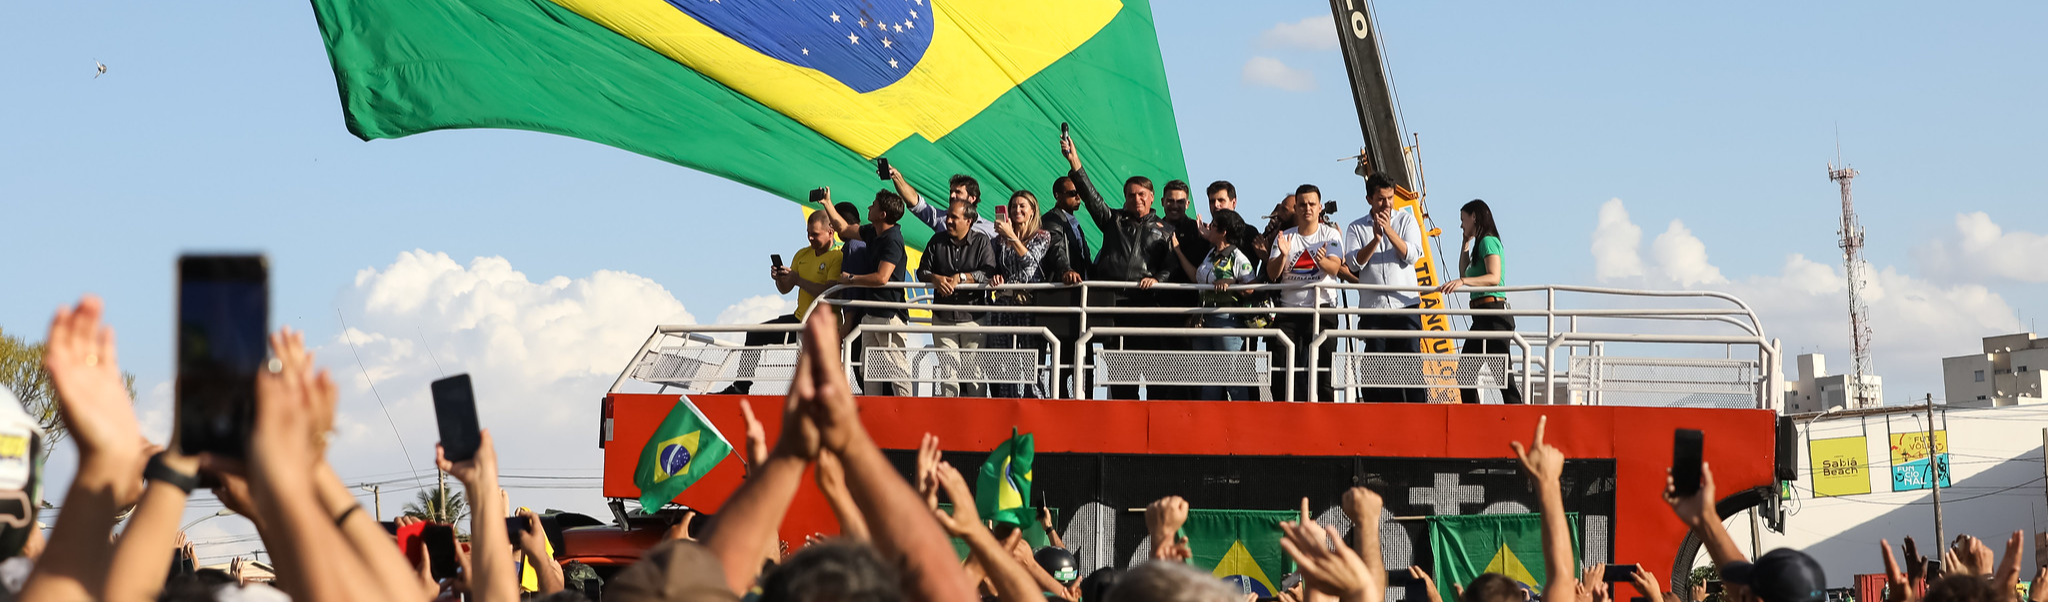 Se campanha de Bolsonaro não parar, haverá escalada da violência política, diz pesquisador